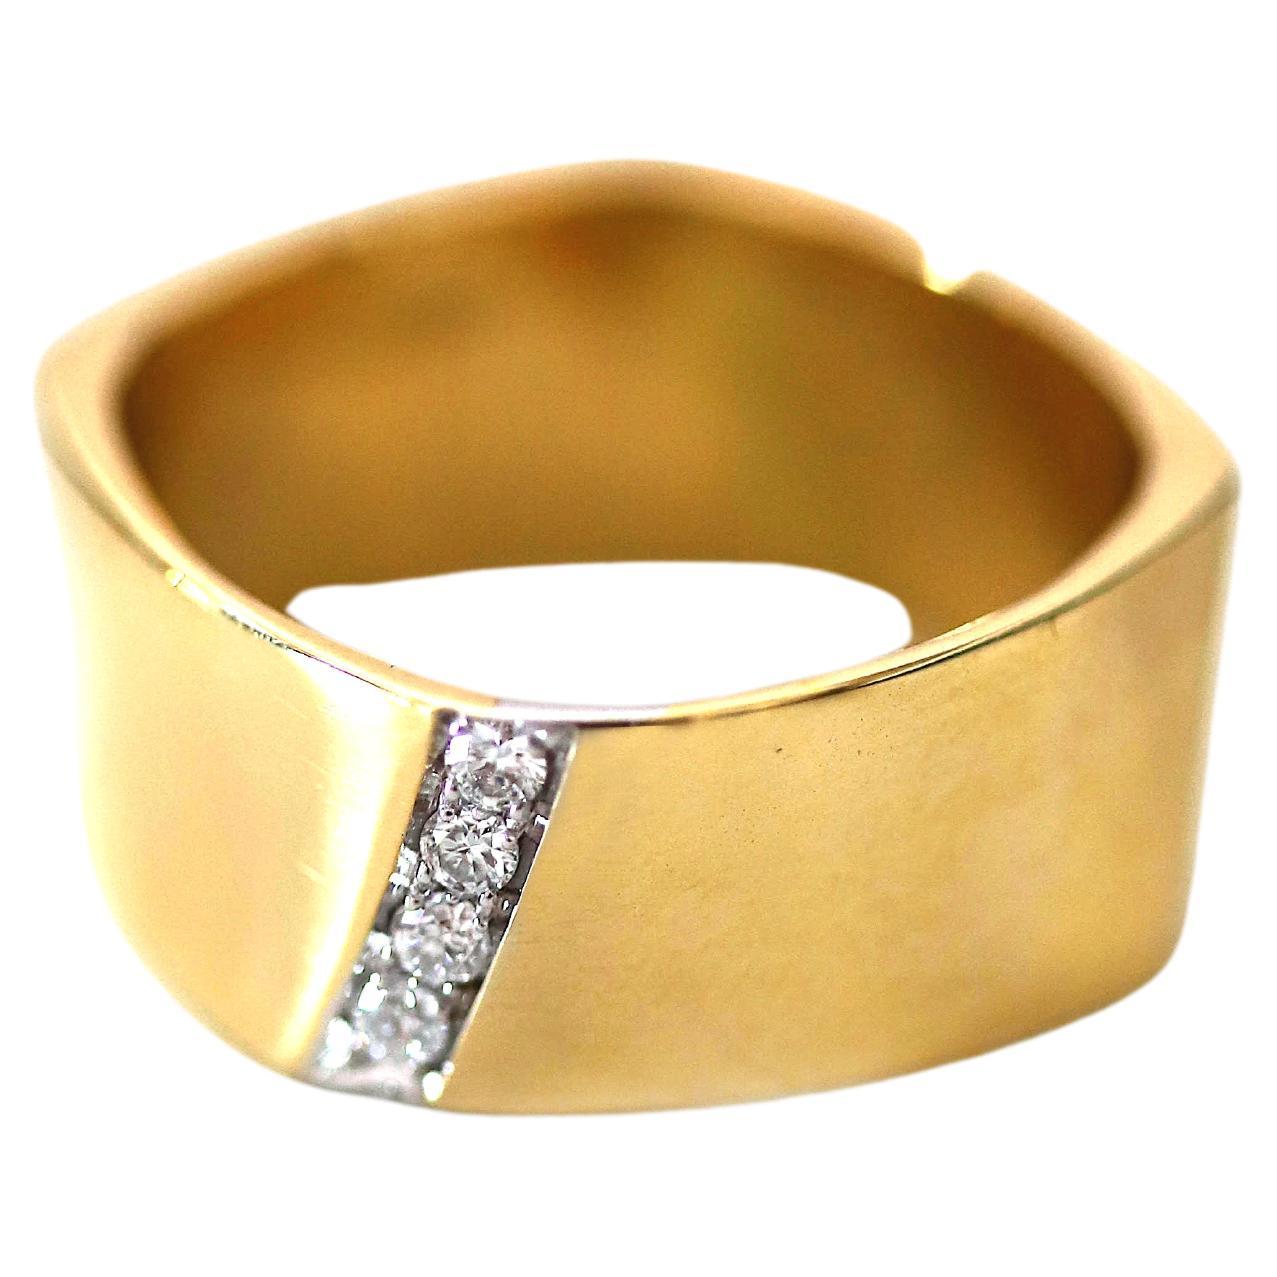 Unisex-Ring, 18 Karat Gelbgold, weiße Diamanten im Brillantschliff, Banddesign 